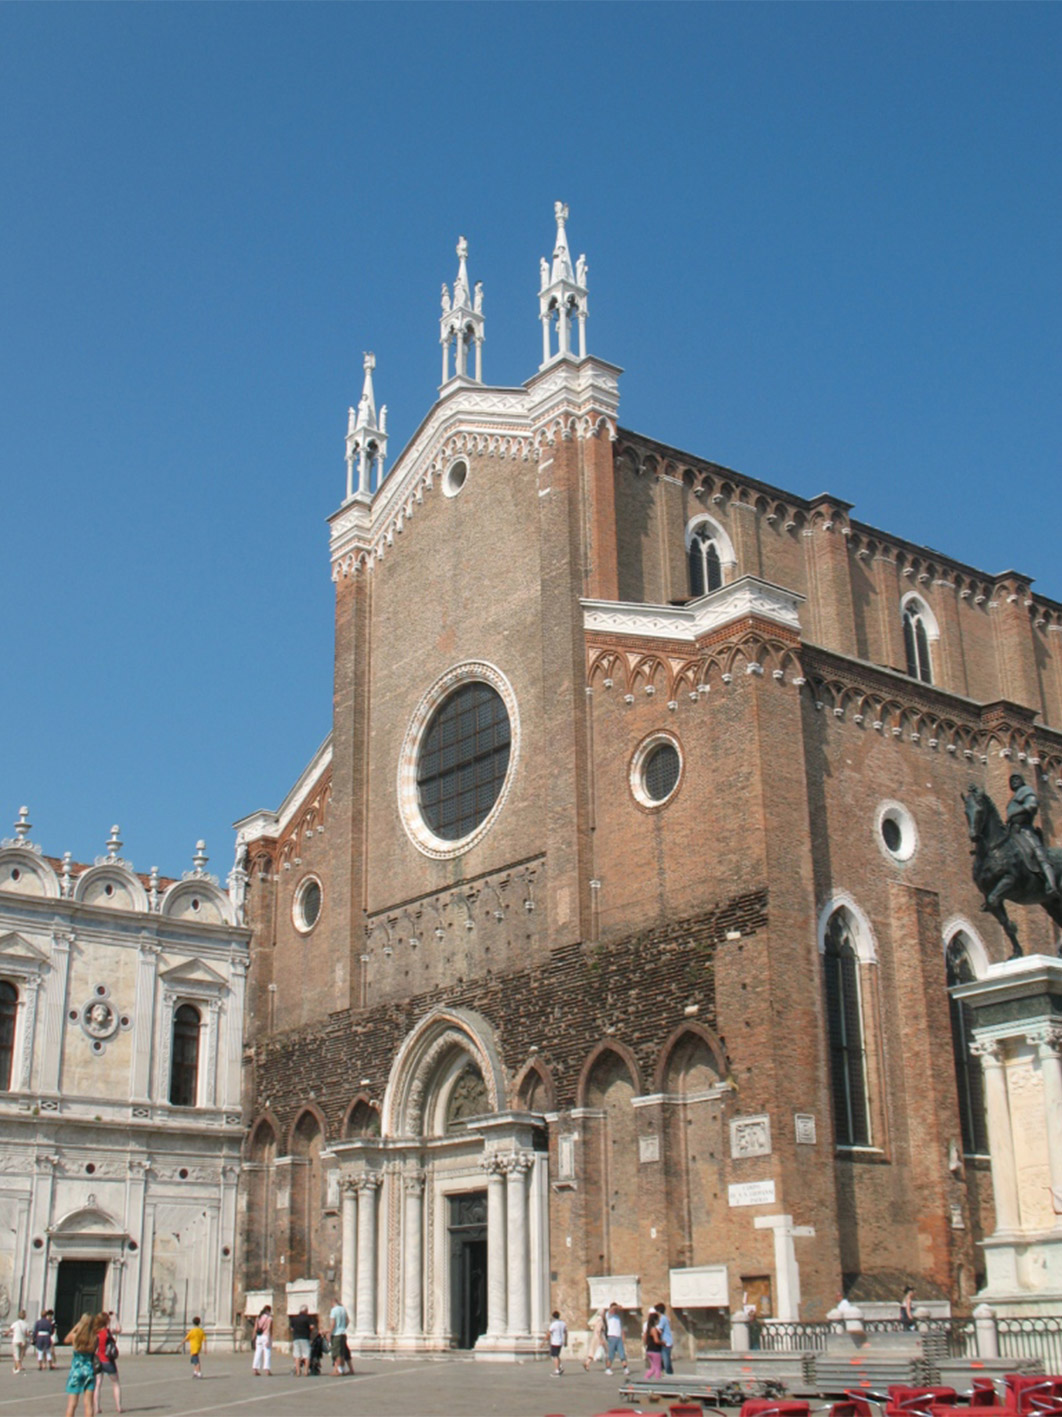 Basilica dei Santi Giovanni e Paolo, also called San Zanipolo